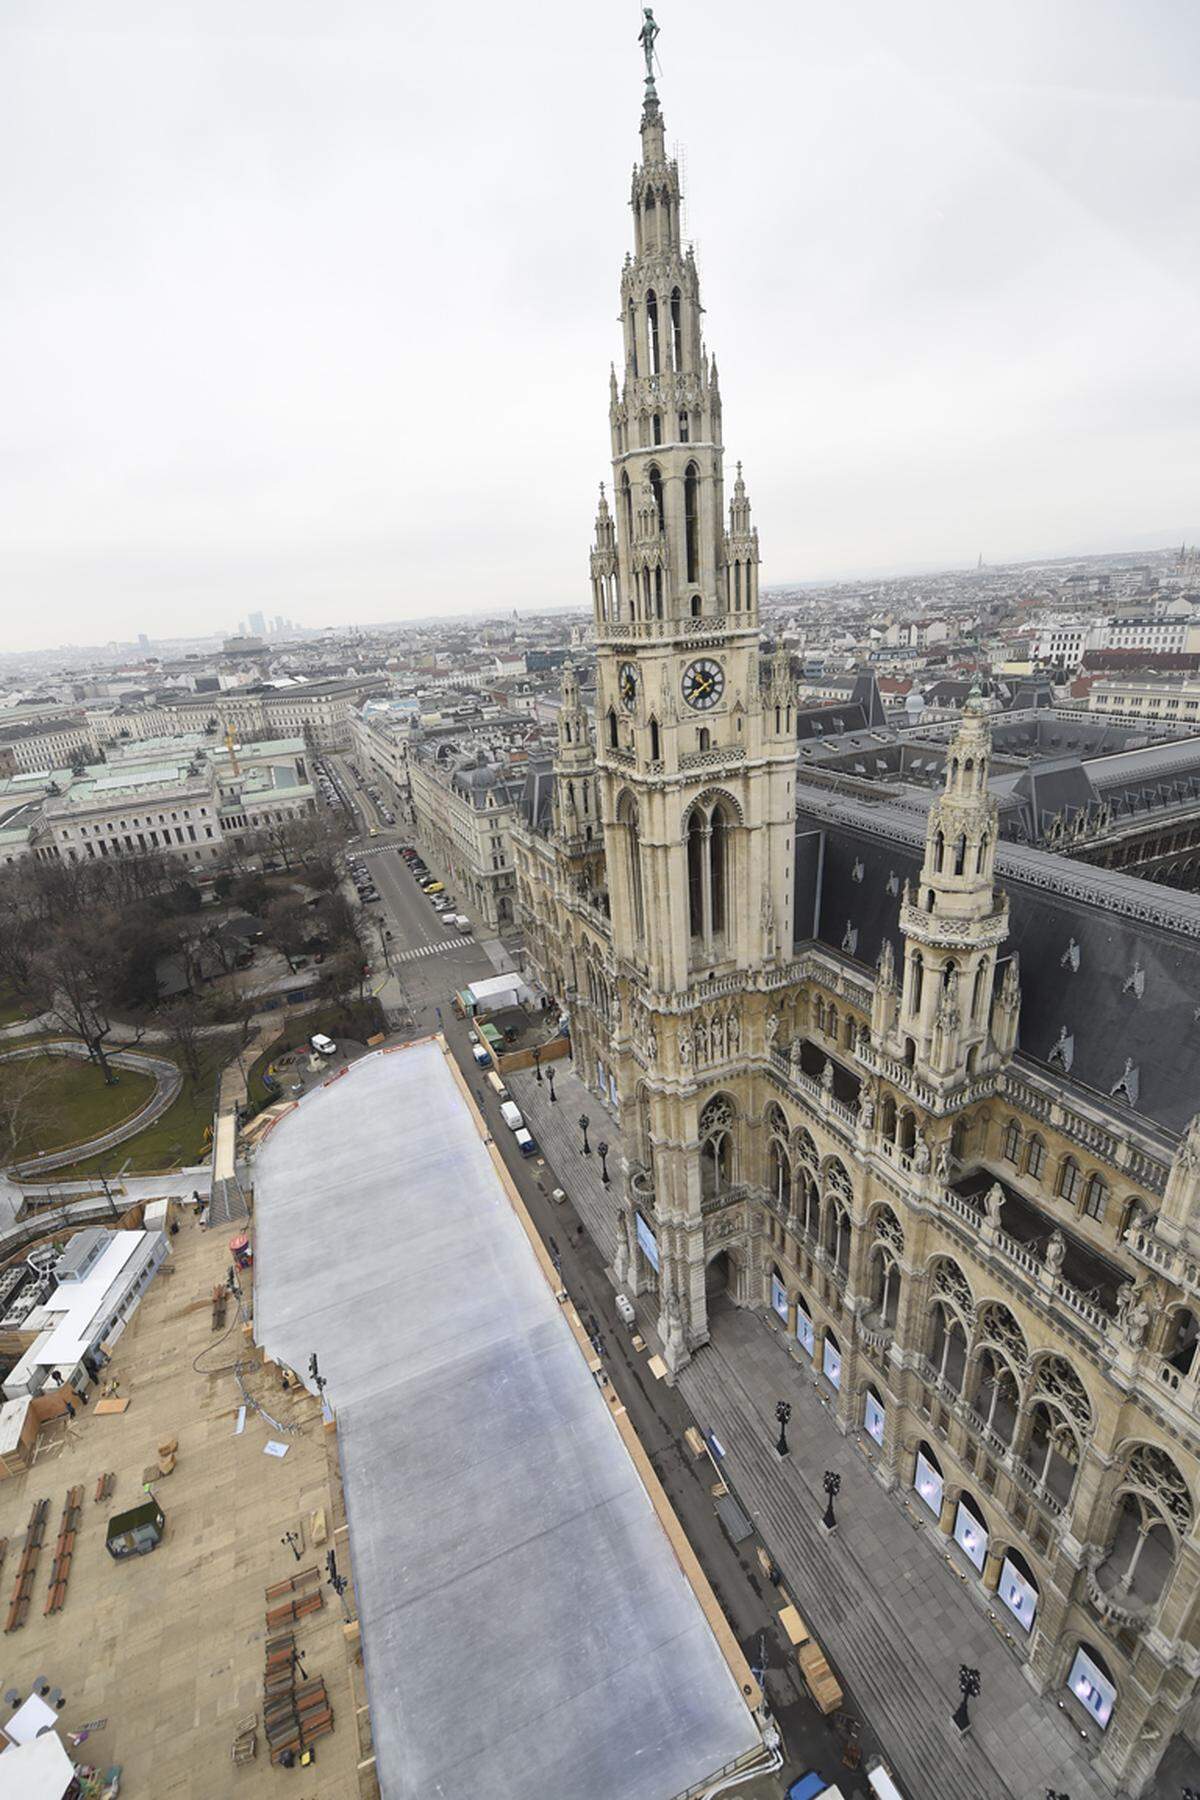 Der Blick reicht nicht nur in die Innenhöfe des Rathauses, sondern auch weit über die Dächer Wiens bis hin zur Donauplatte und - an klaren Tagen - auch über die Stadtgrenze hinaus.